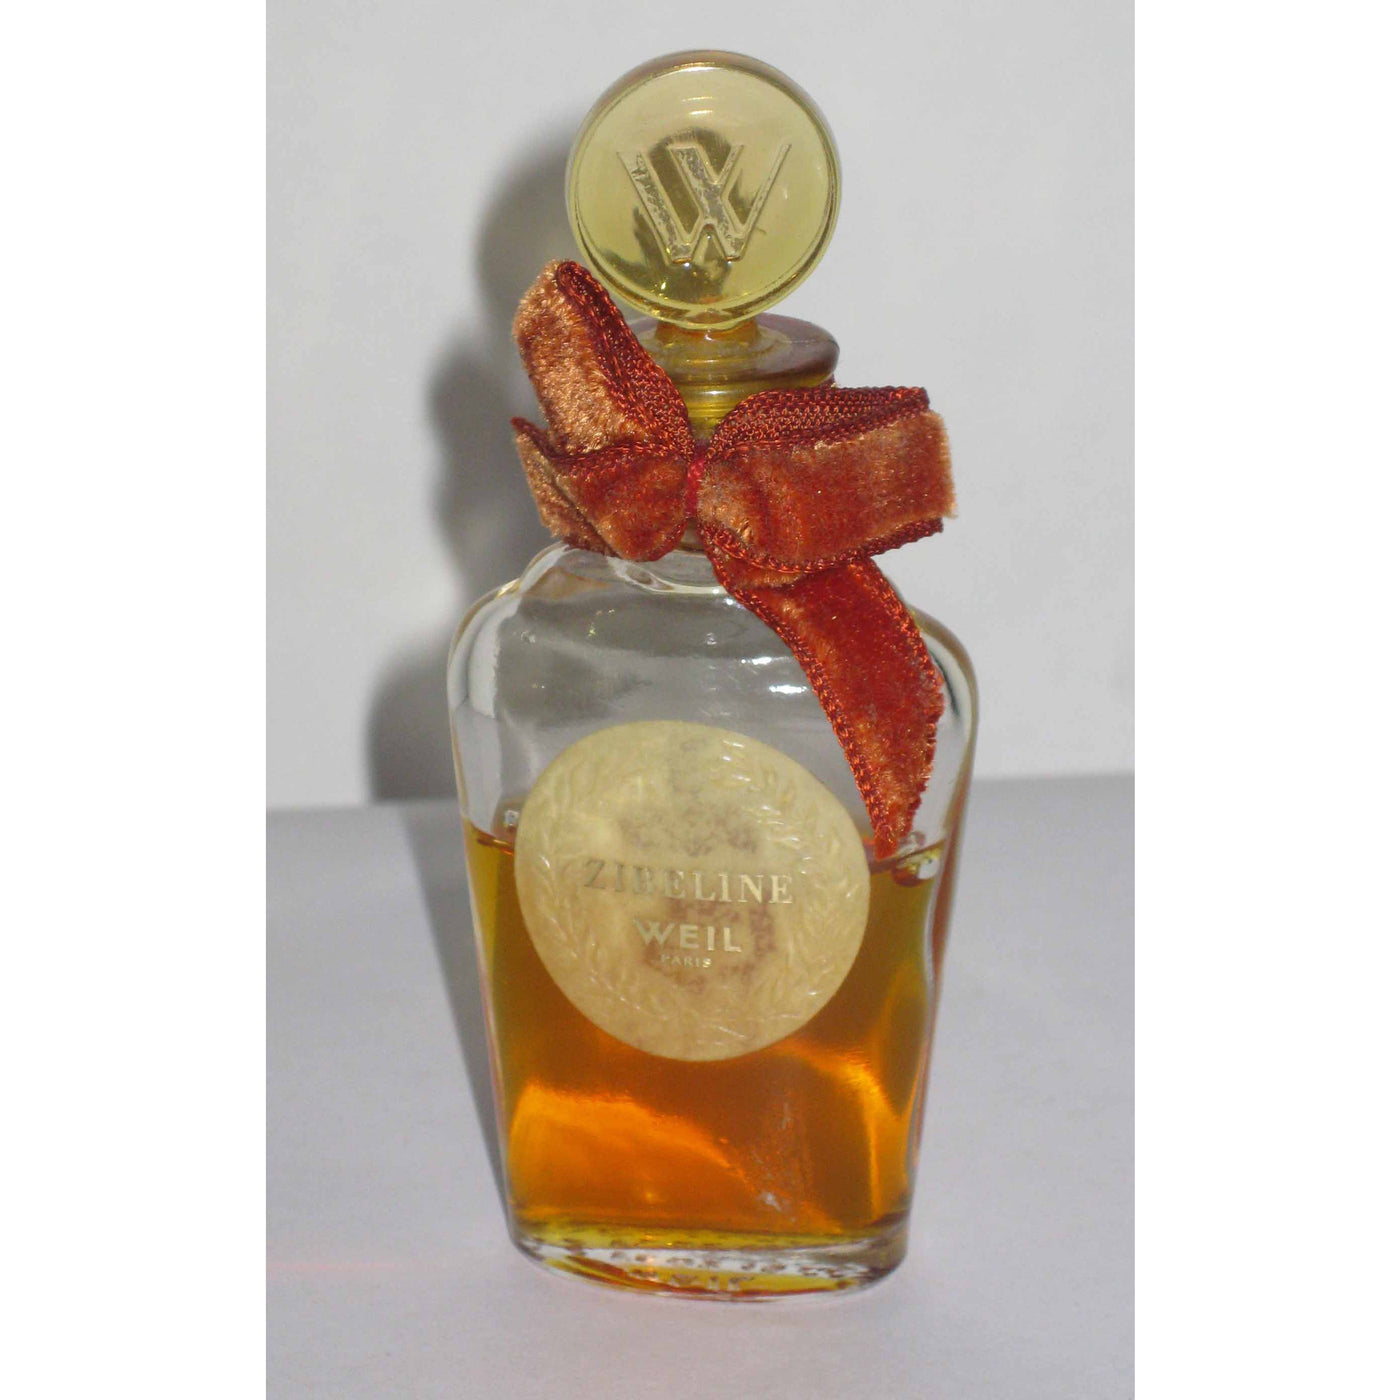 Vintage Weil Zibeline Perfume